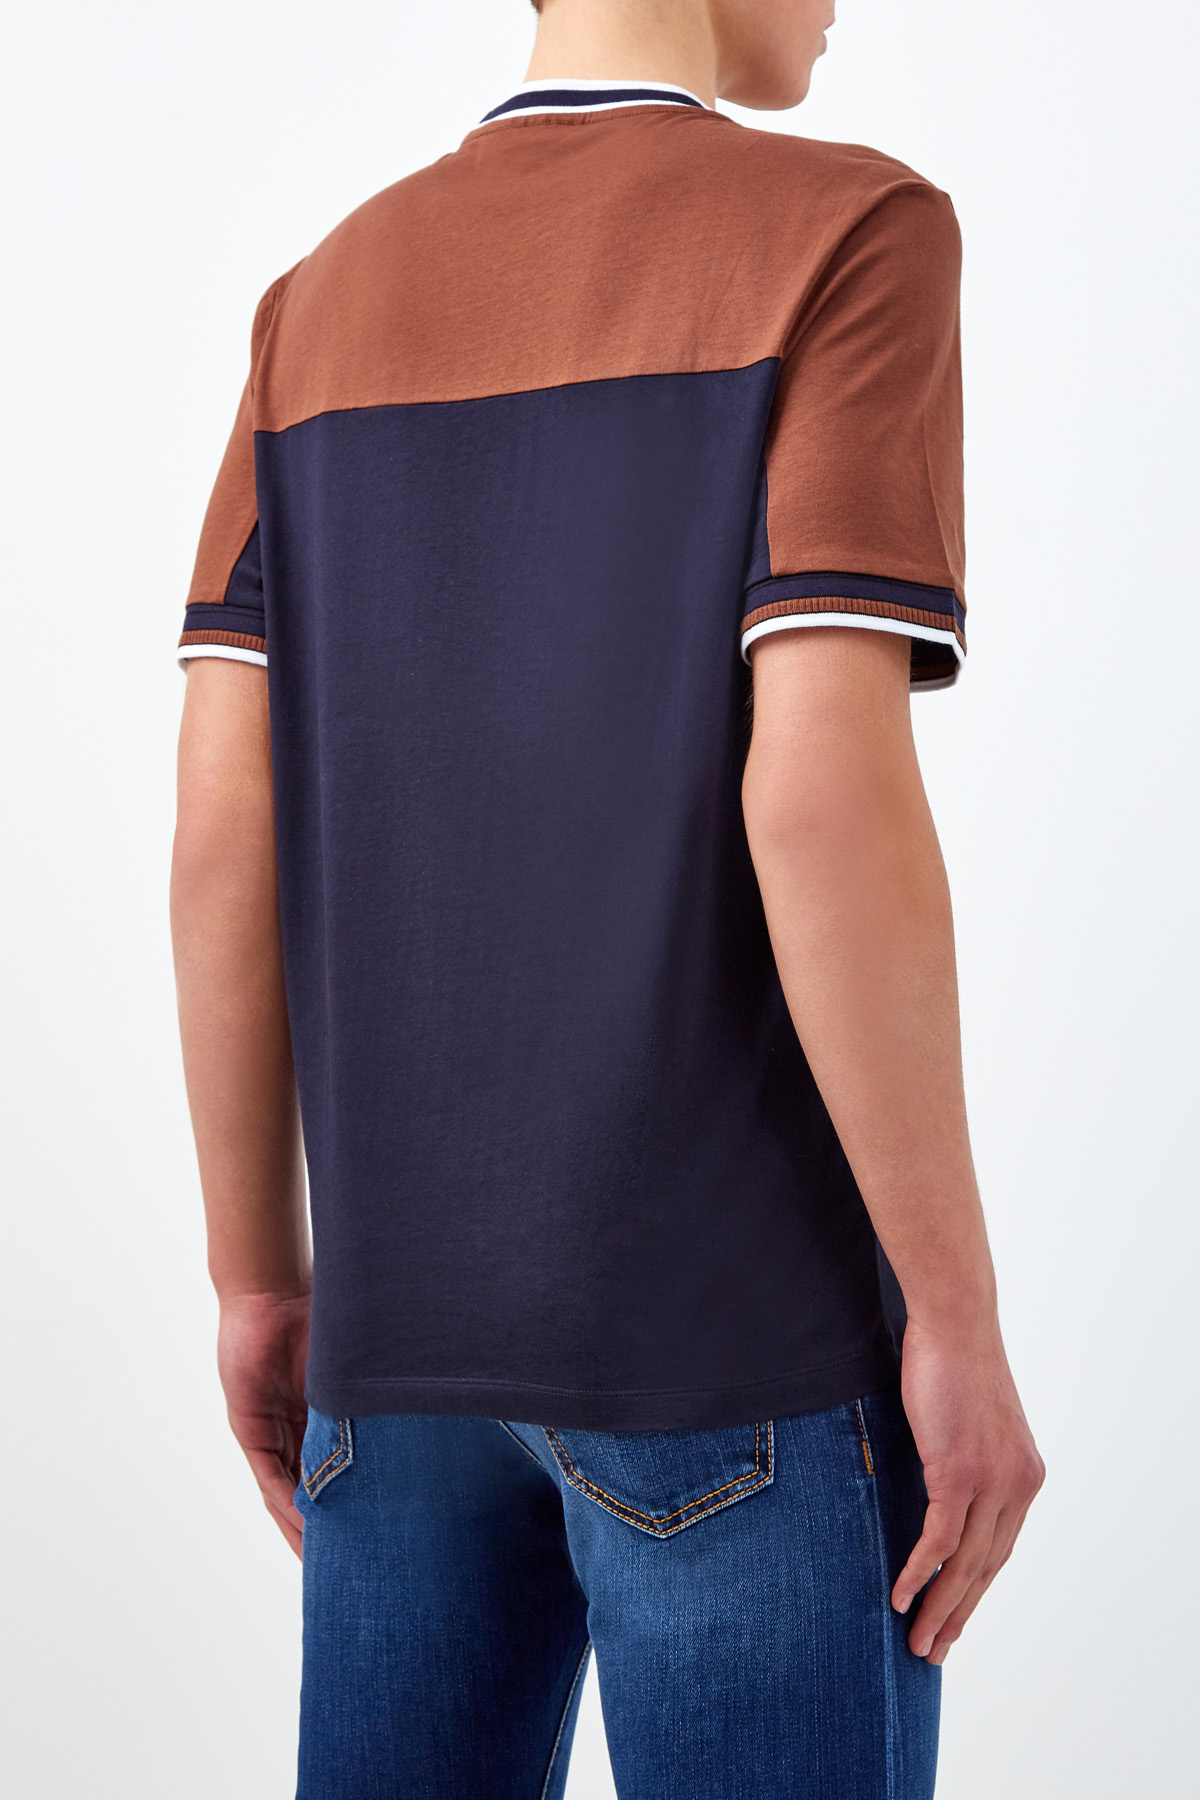 Базовая футболка из хлопка джерси MICHAEL KORS, цвет мульти, размер L;2XL - фото 4